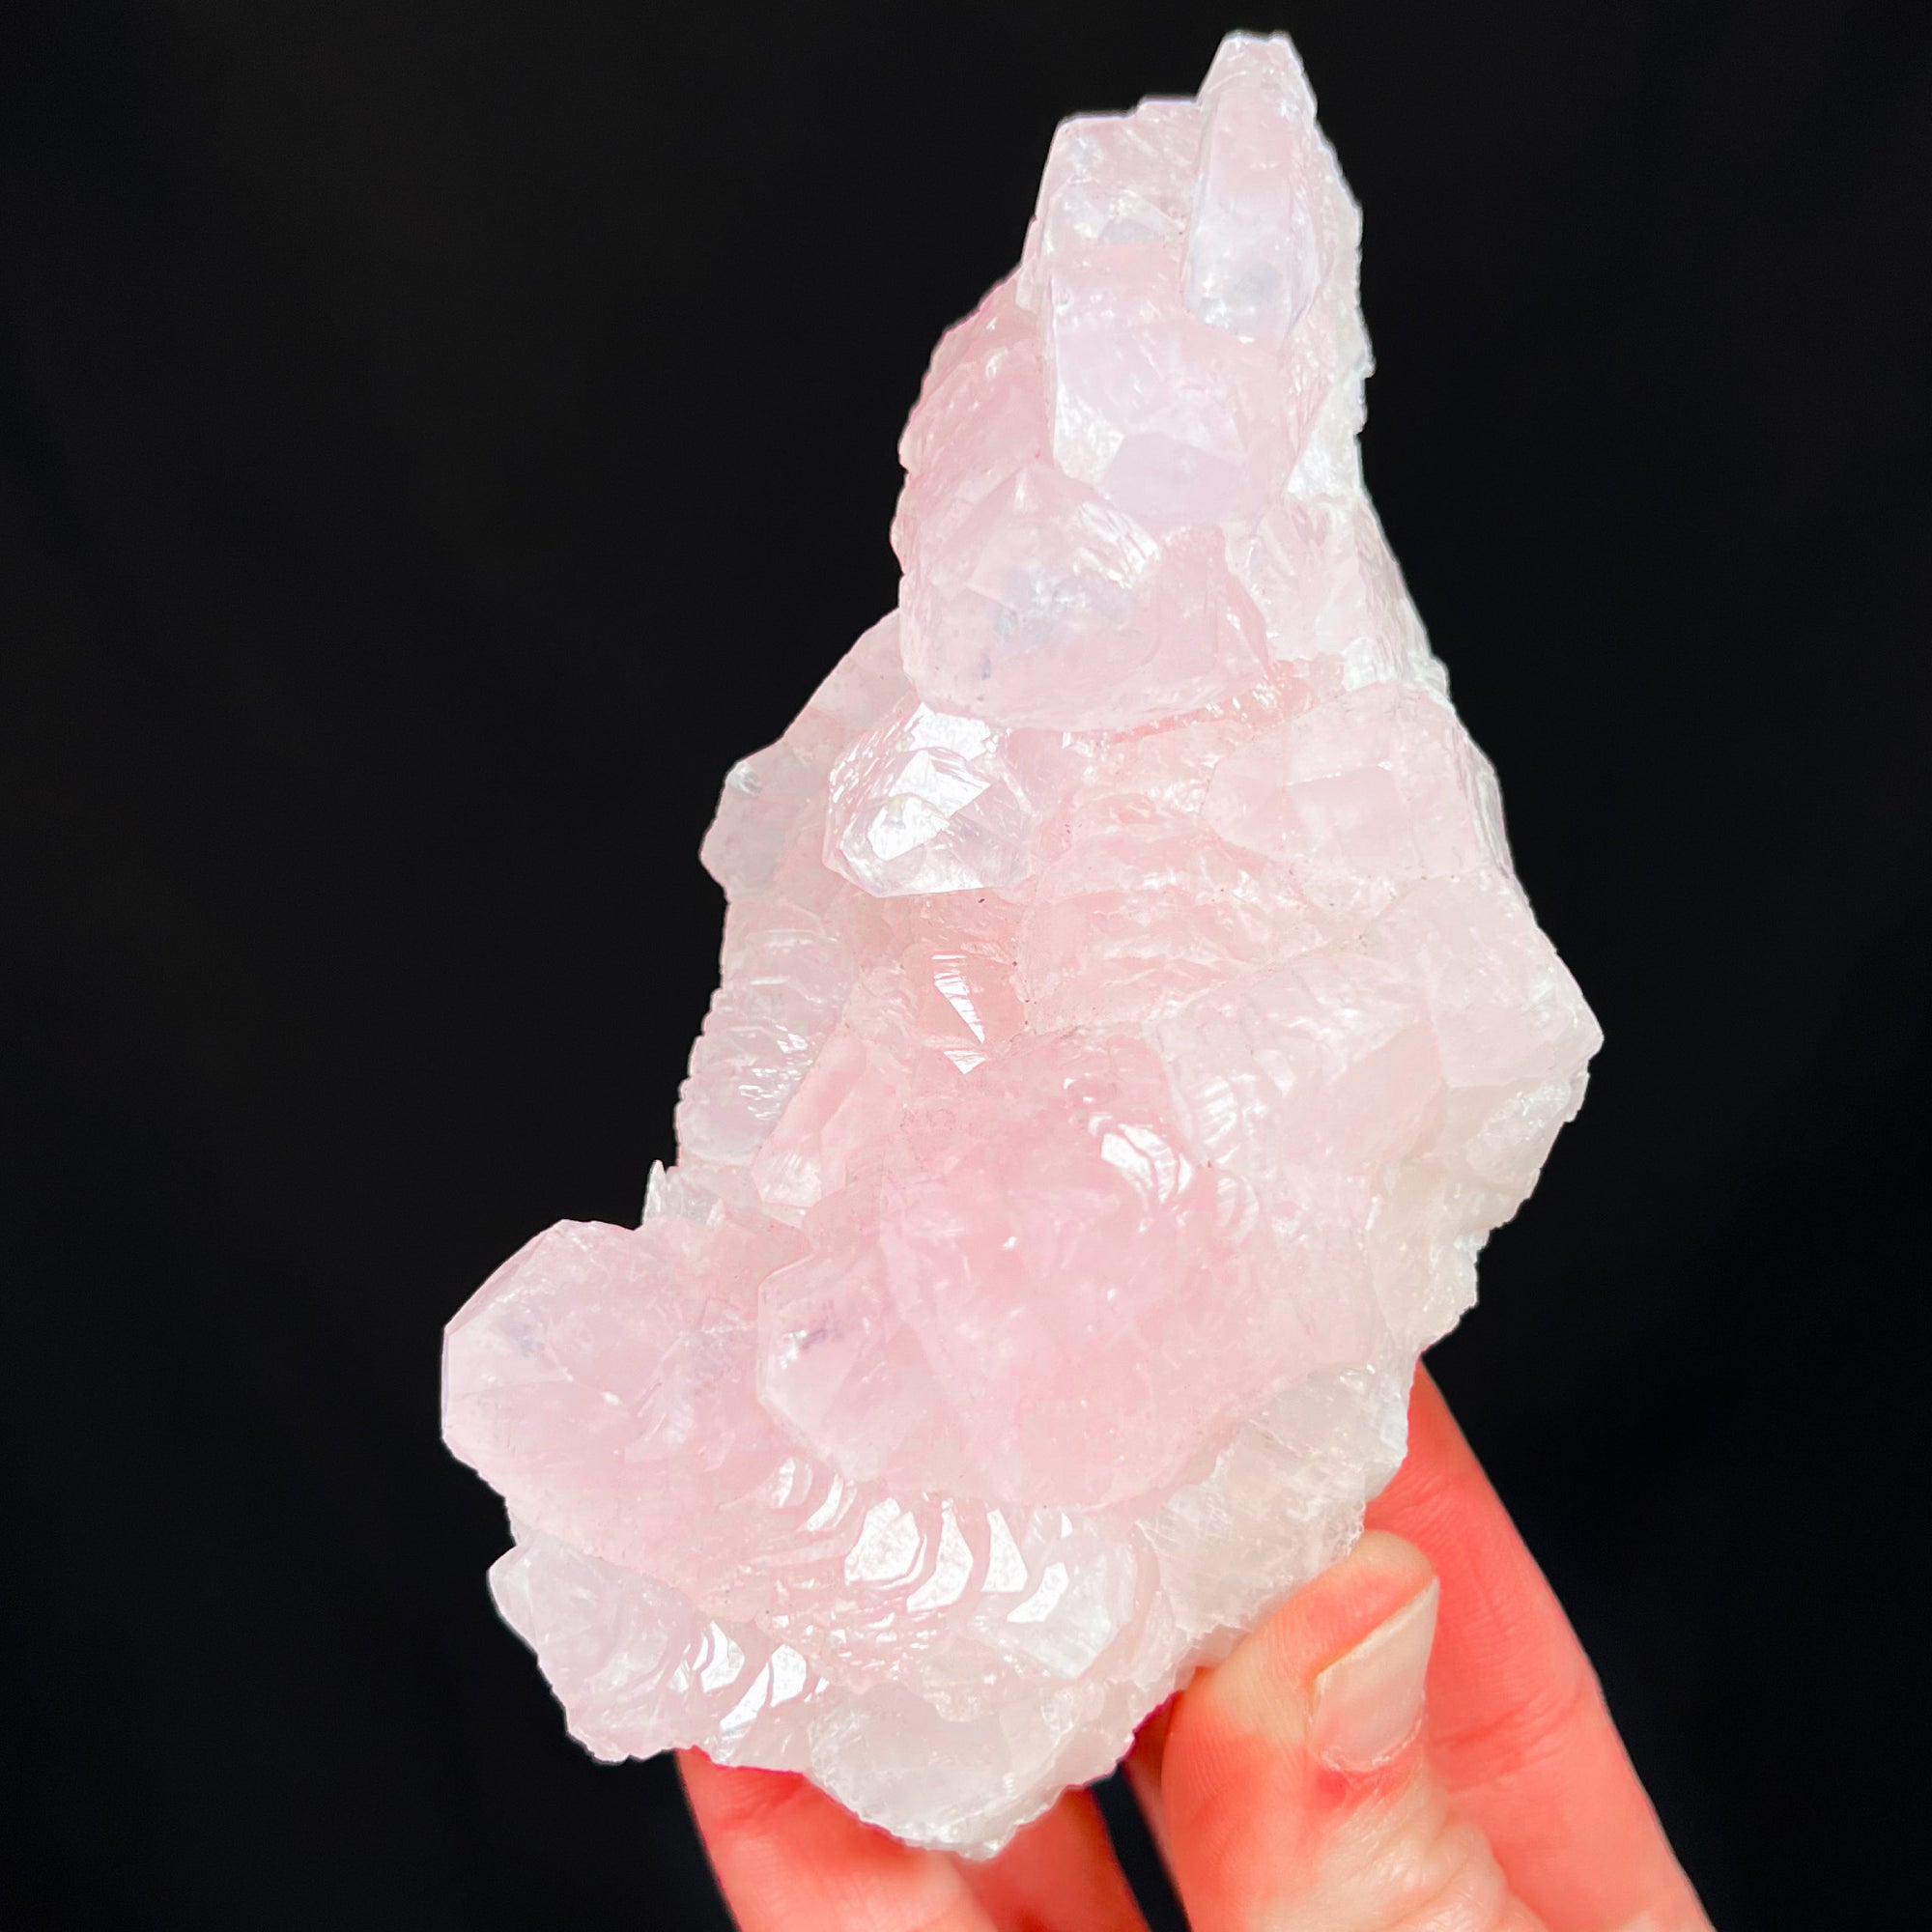 Manganese Bearing Pink Calcite